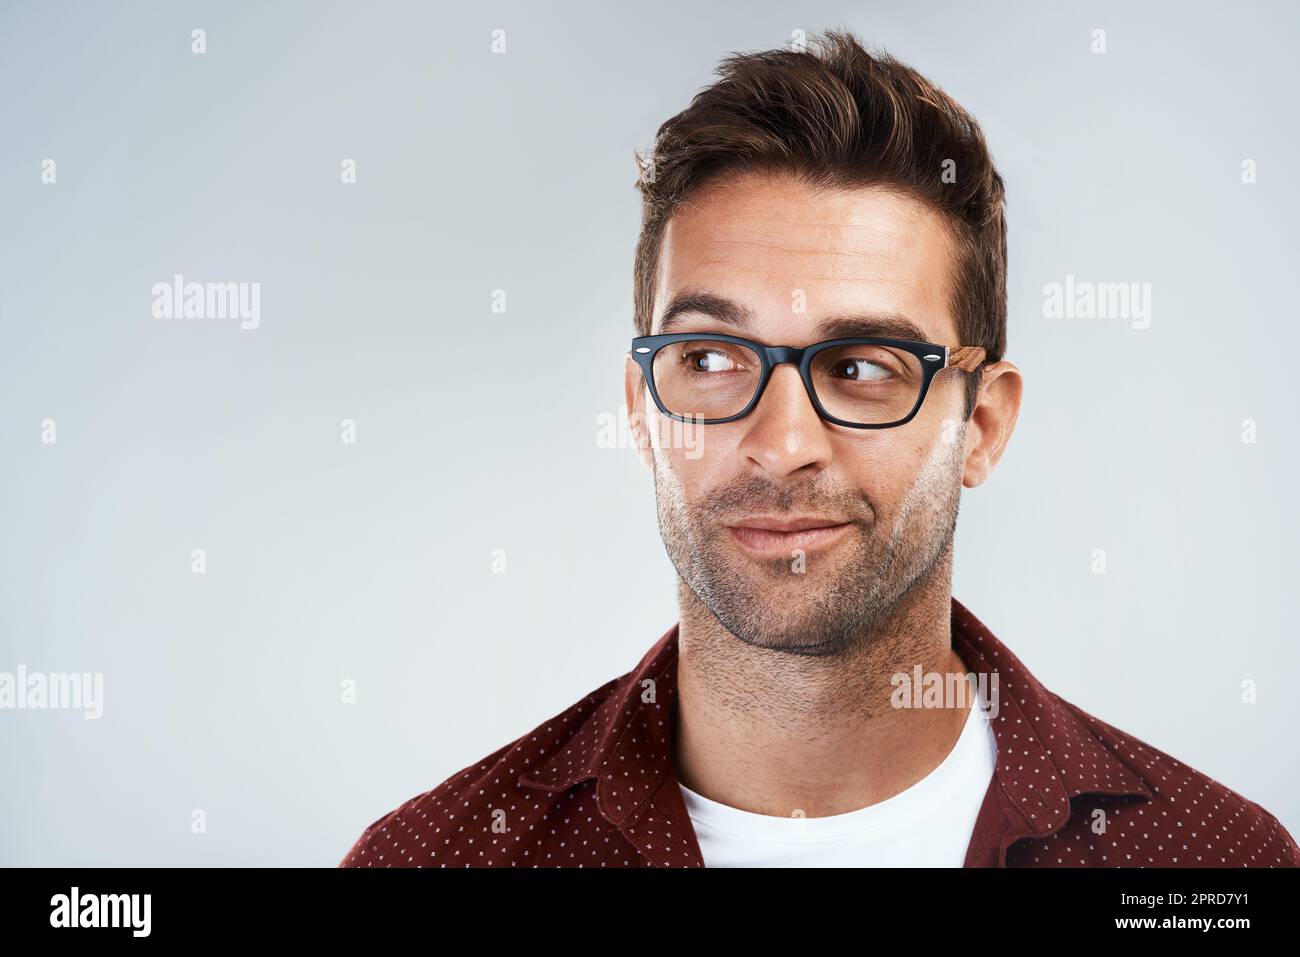 Seien Sie nicht schüchtern. Porträt eines fröhlichen jungen Mannes, der eine Brille trägt und hell lächelt, während er vor einem grauen Hintergrund steht. Stockfoto